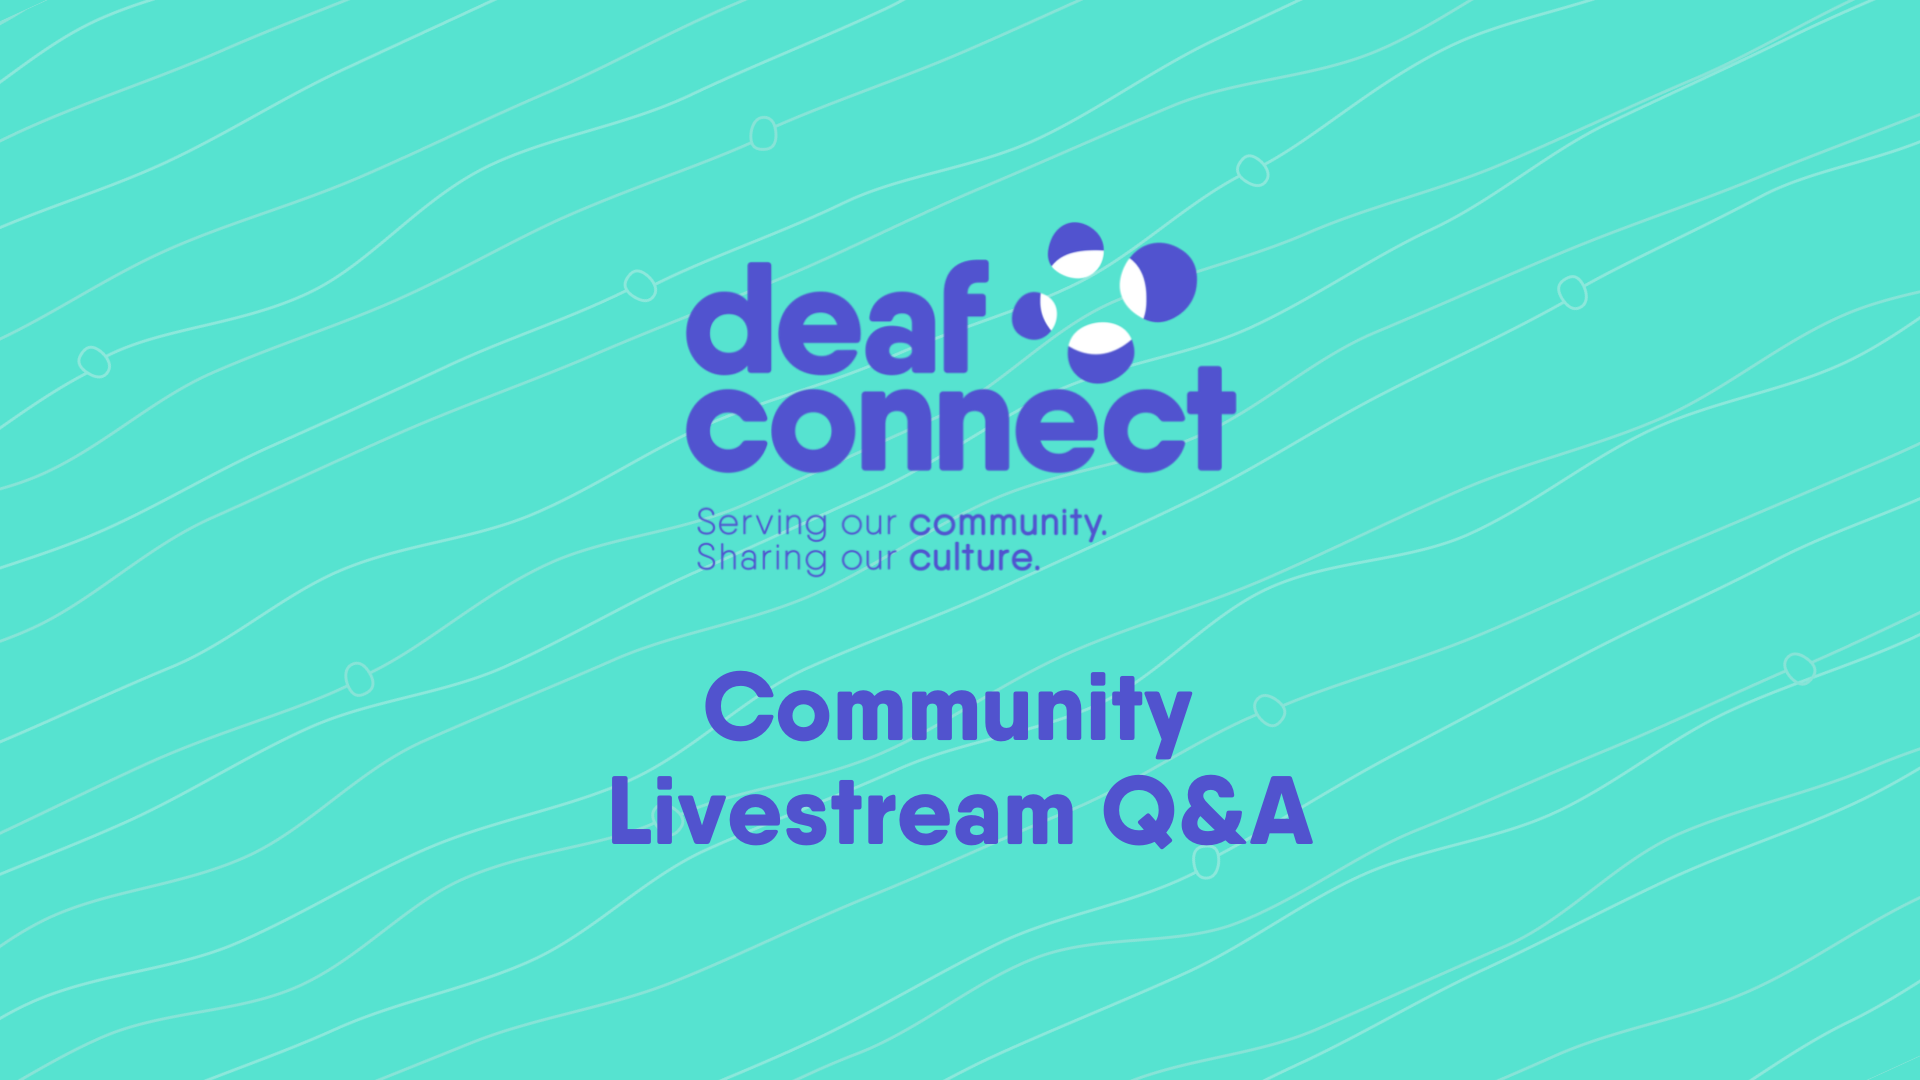 Community Livestream Q&A (1)